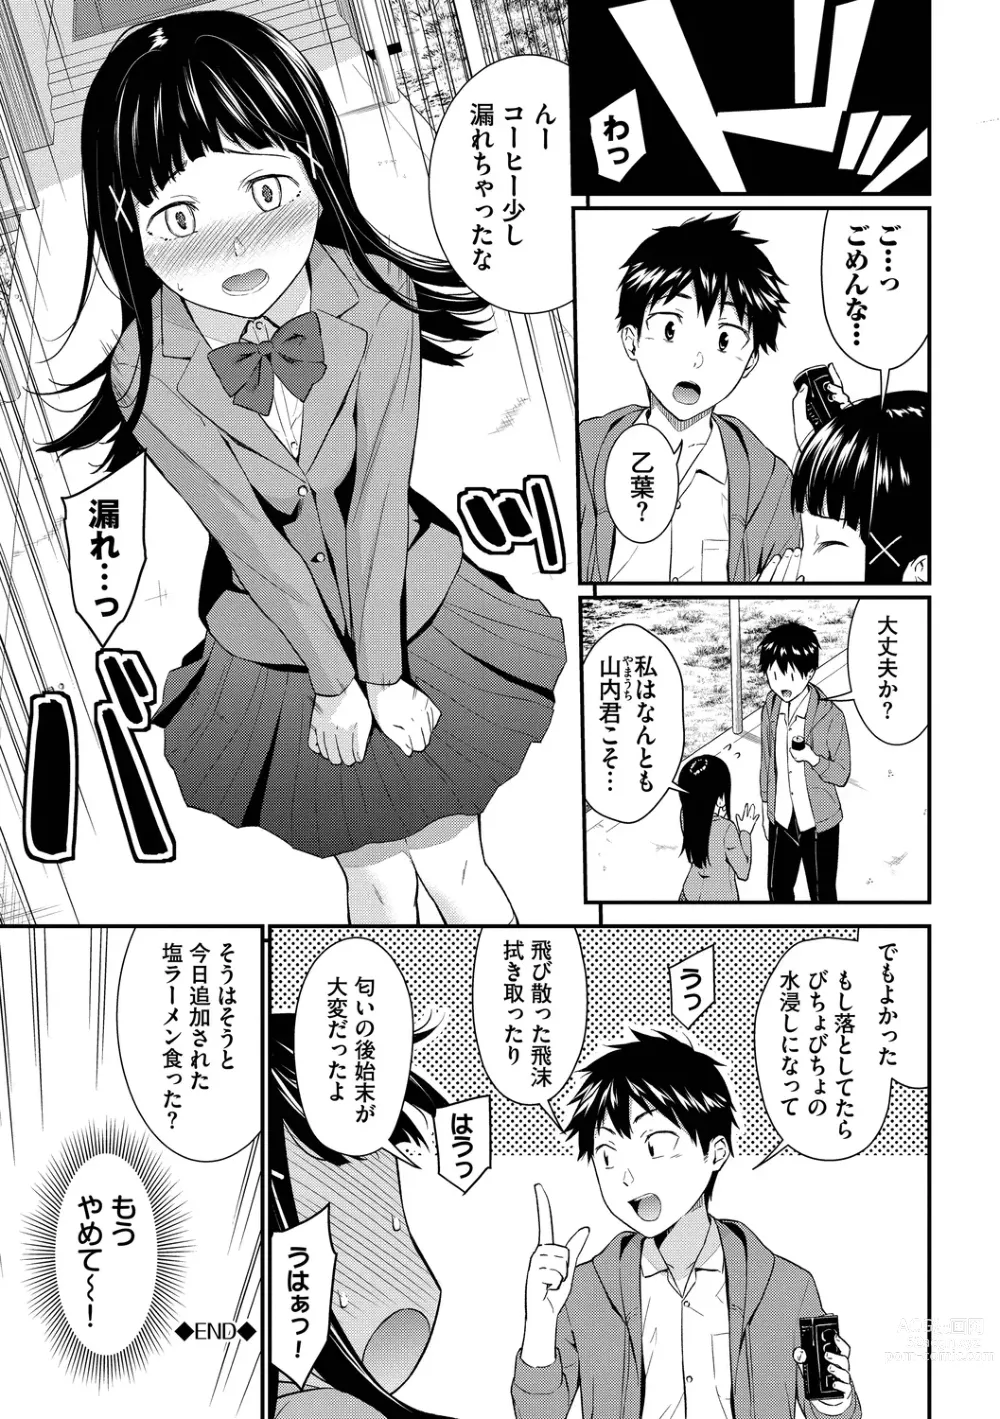 Page 189 of manga Hajirai Limit